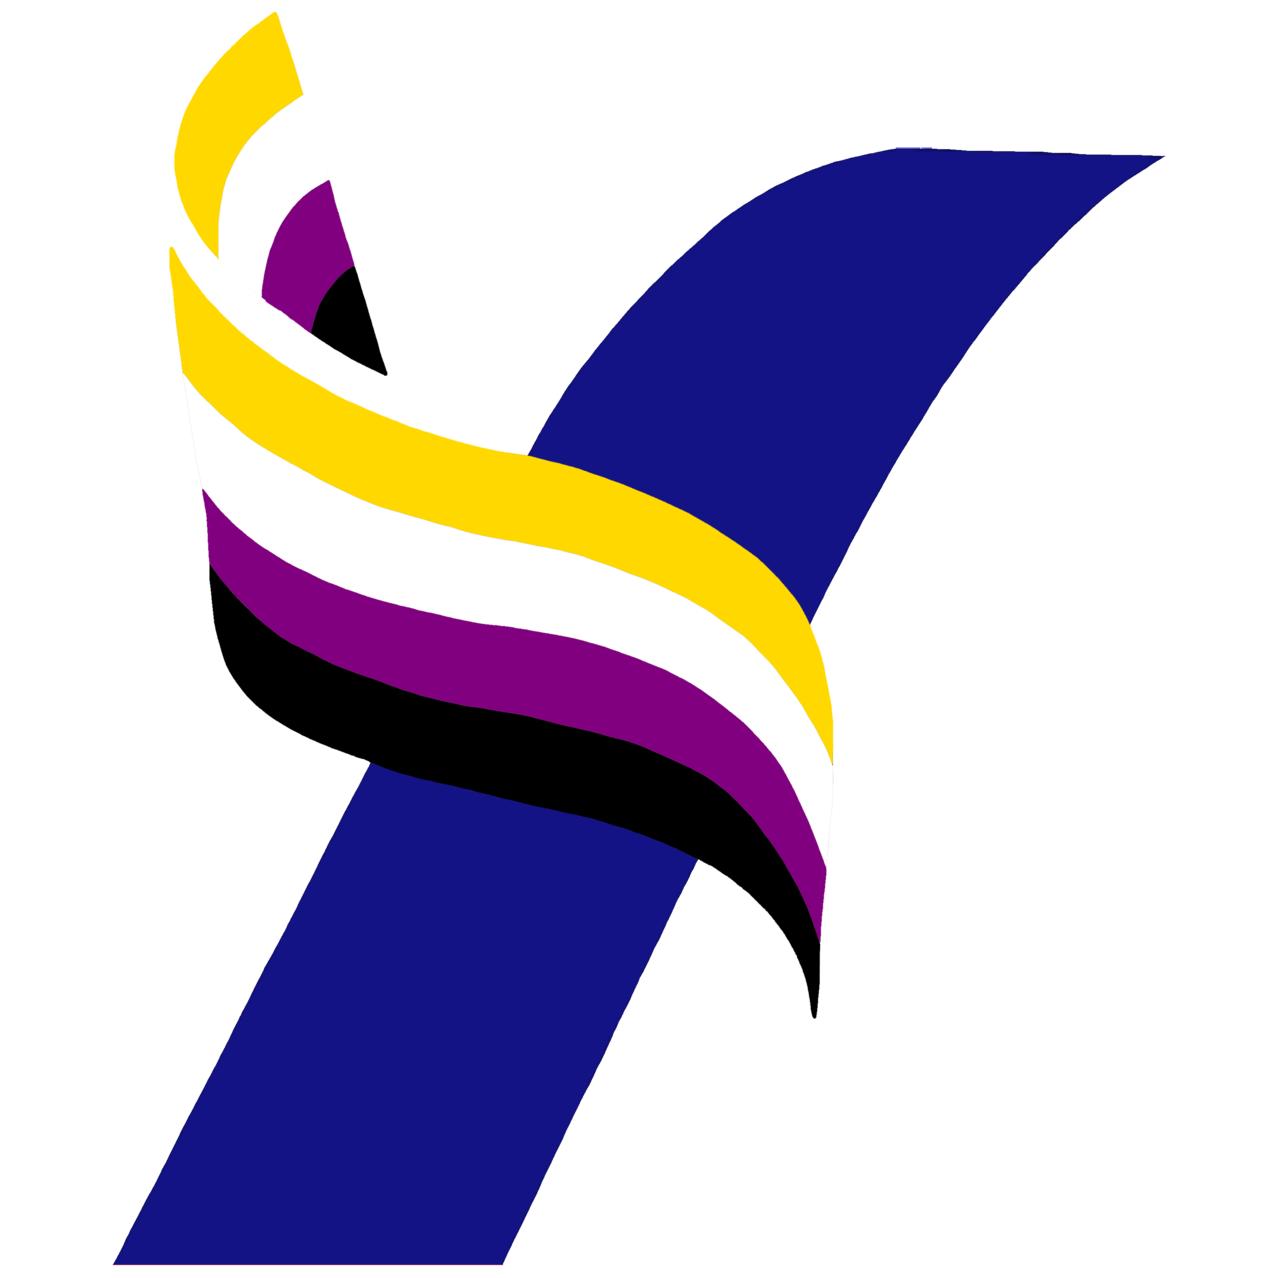 Yang2020 Official — Yang Pride Logo Set